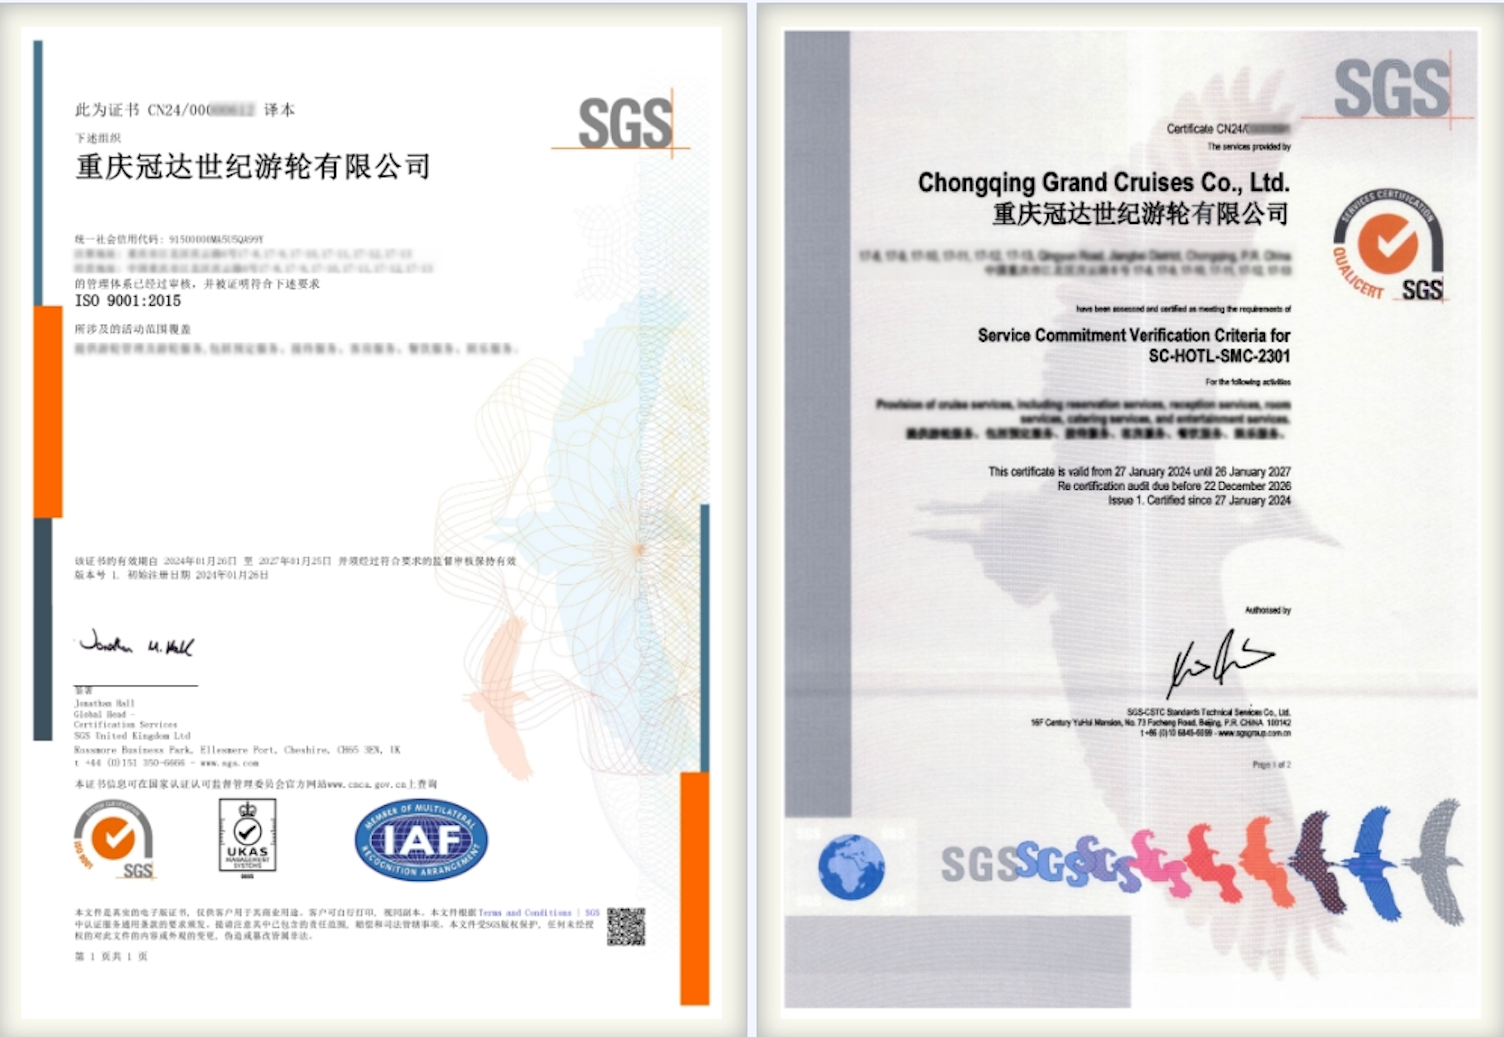  冠达世纪游轮获颁ISO 9001与服务认证双证书